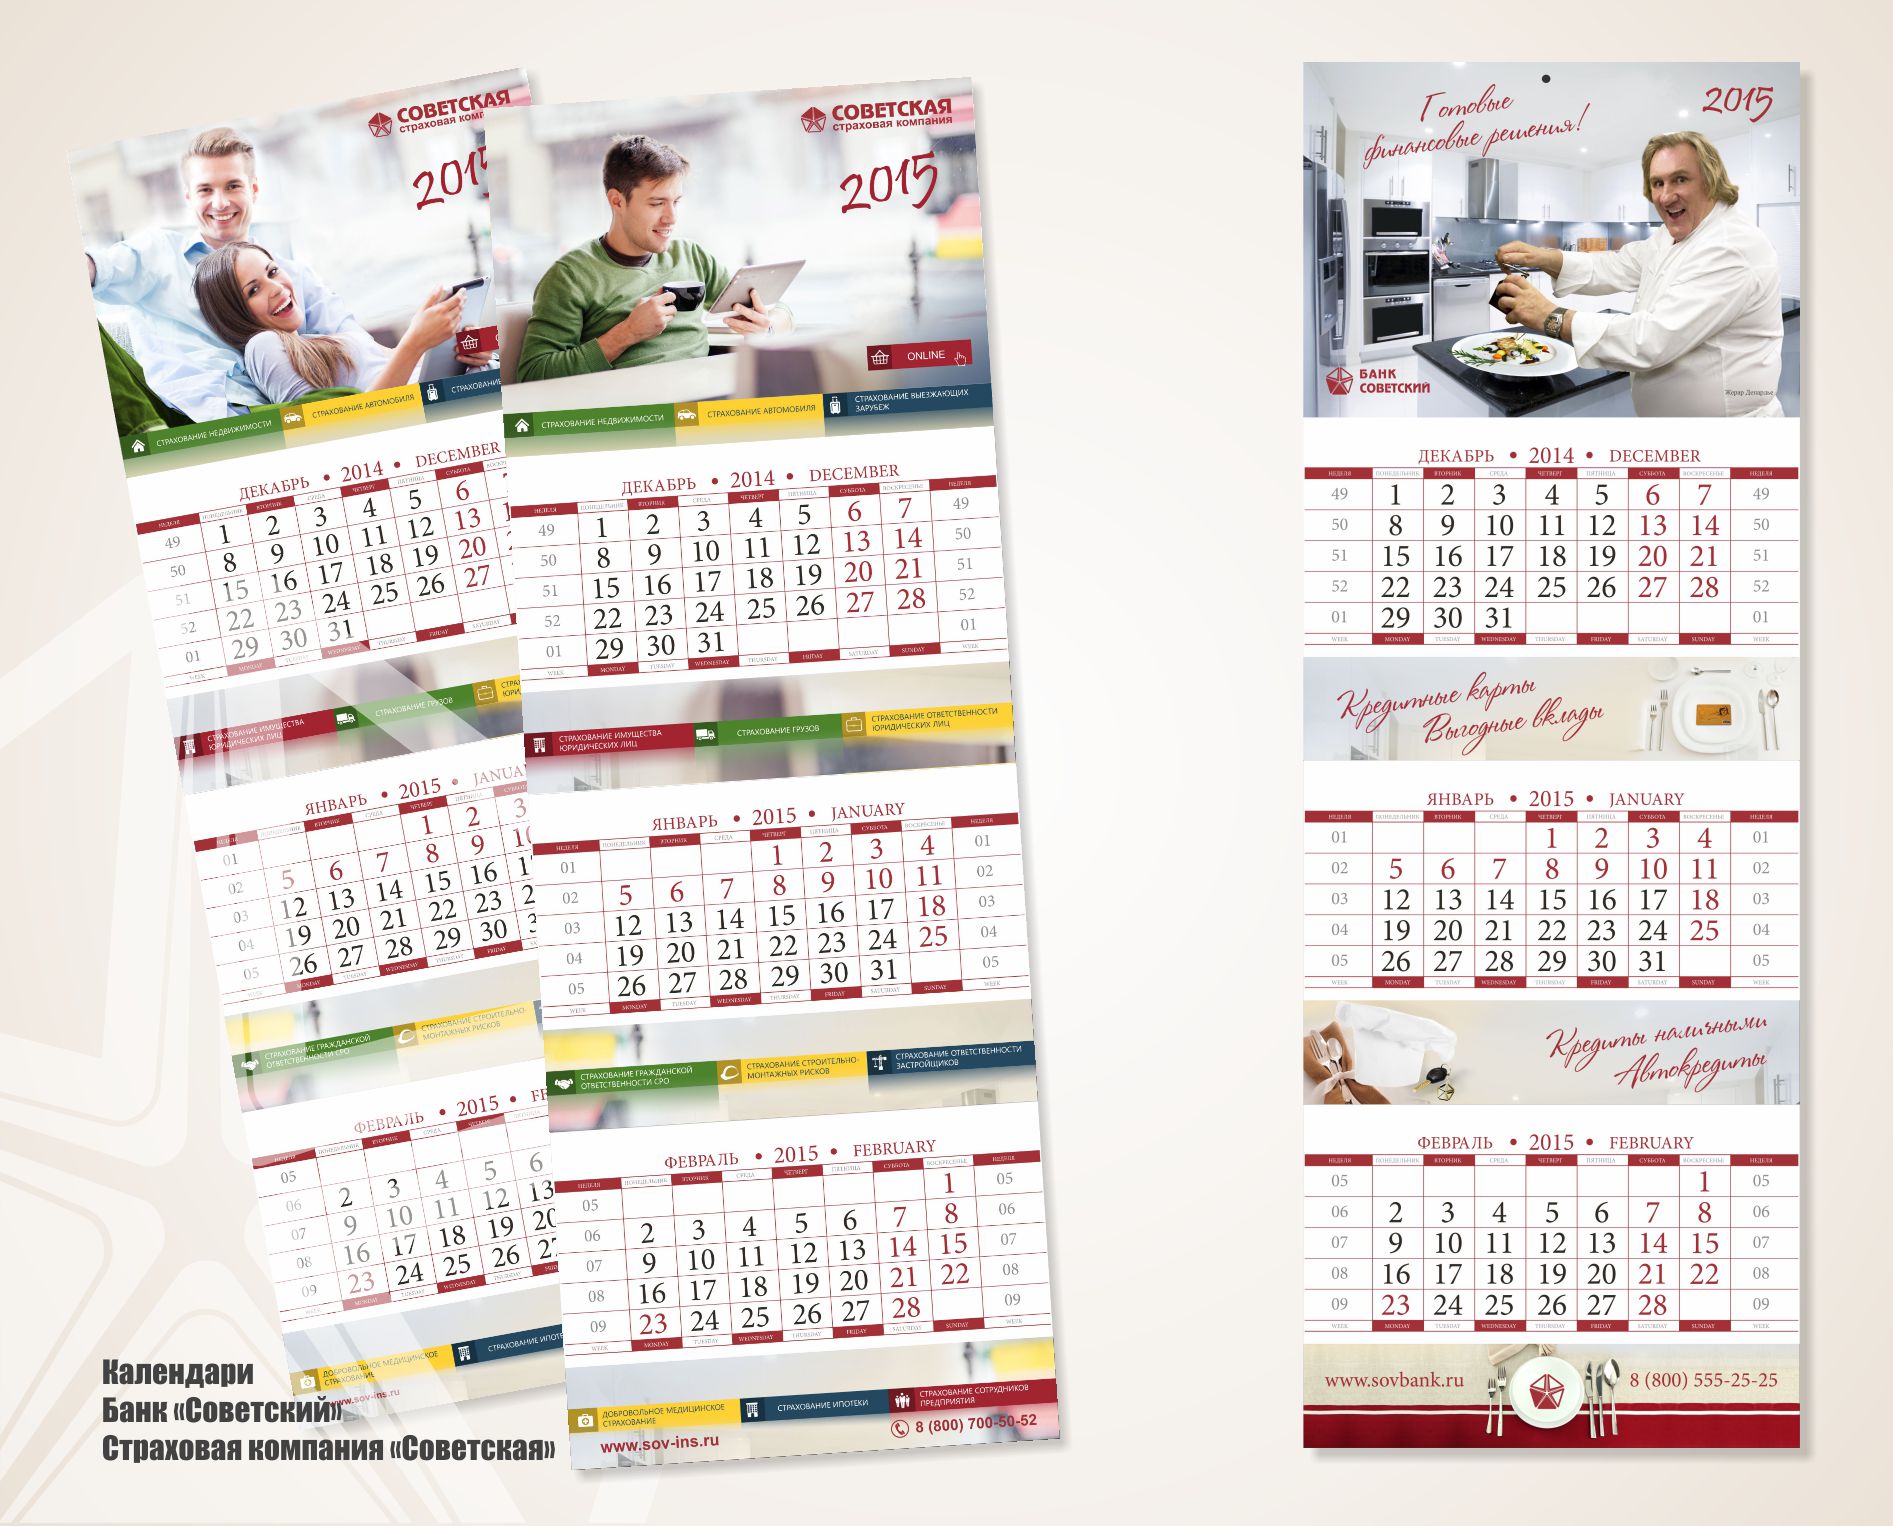 Календари для Банка «Советский» и Страховой компании «Советская»